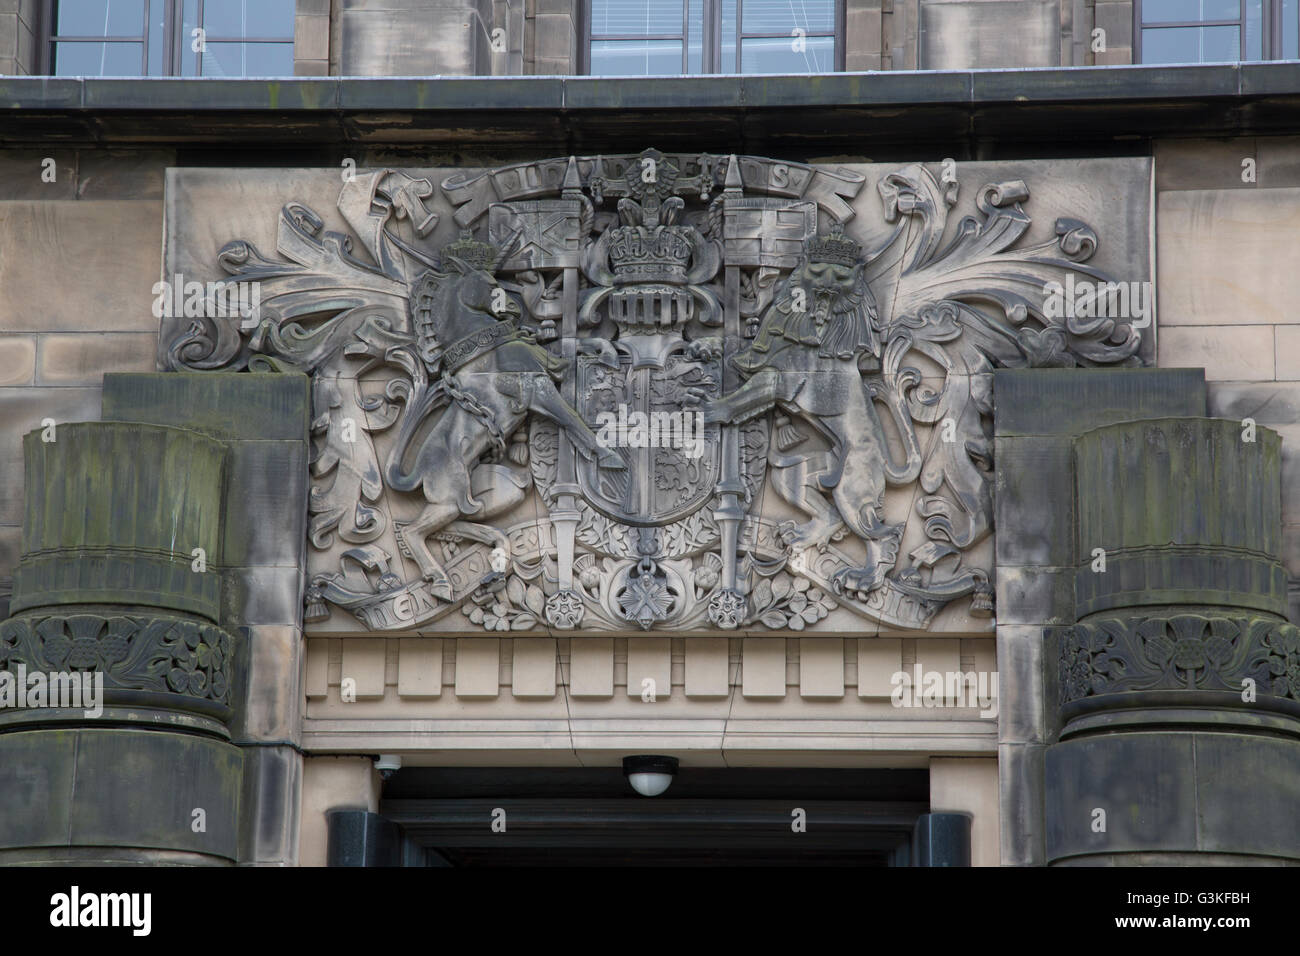 St Andrews House, bâtiment gouvernemental, Édimbourg, Écosse Banque D'Images